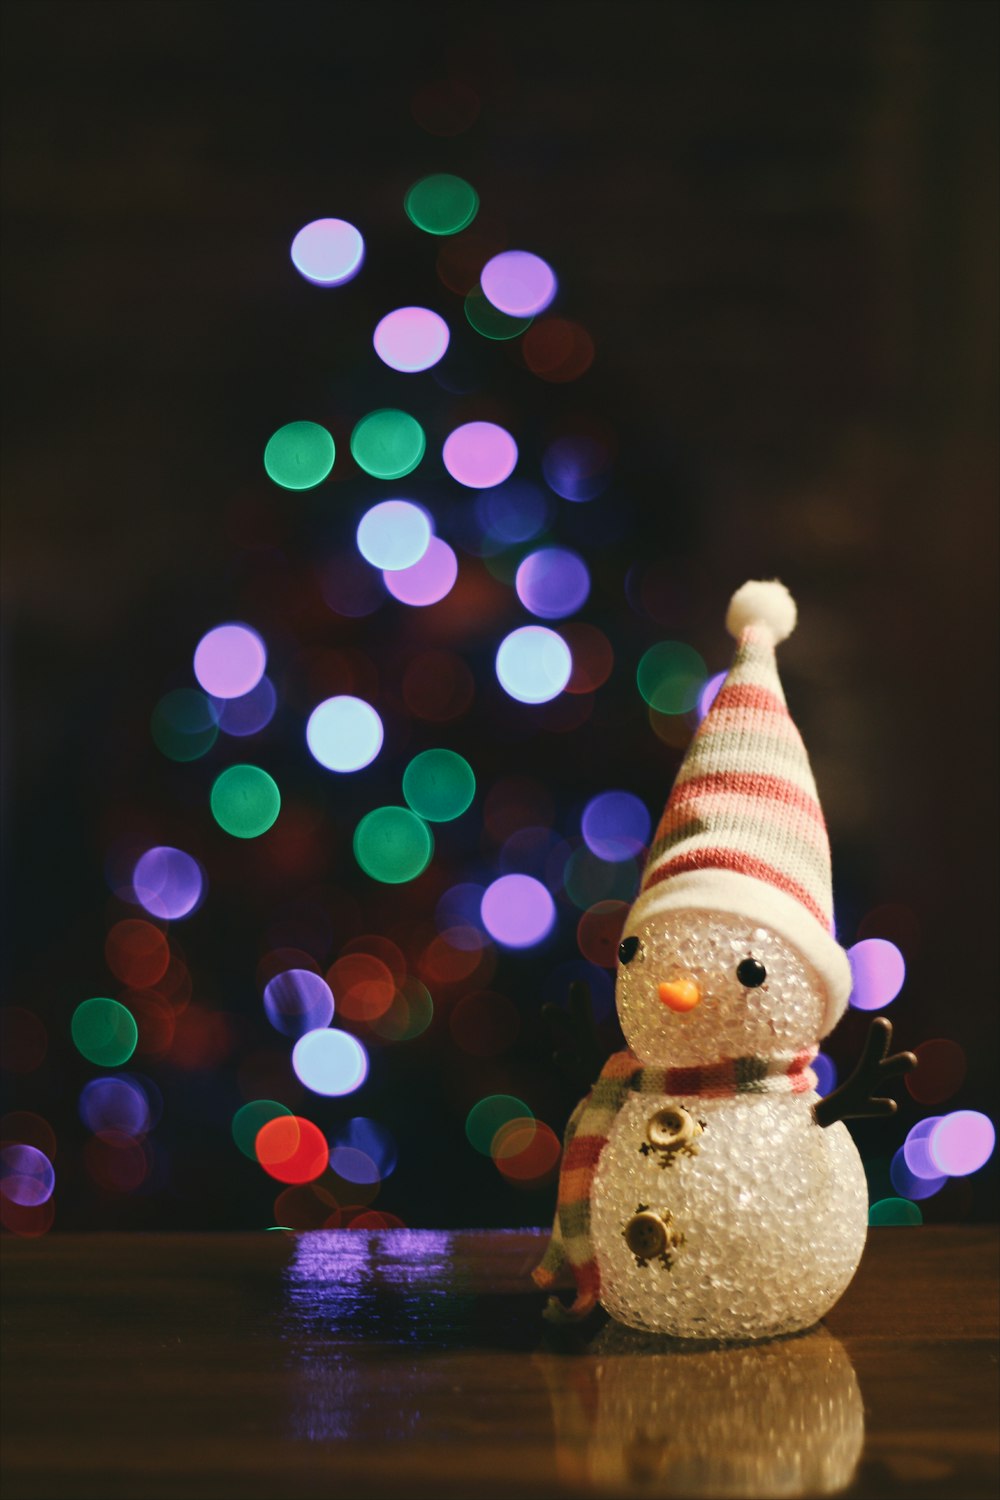 Una piccola figura di pupazzo di neve seduta sul pavimento di fronte a un albero di Natale.